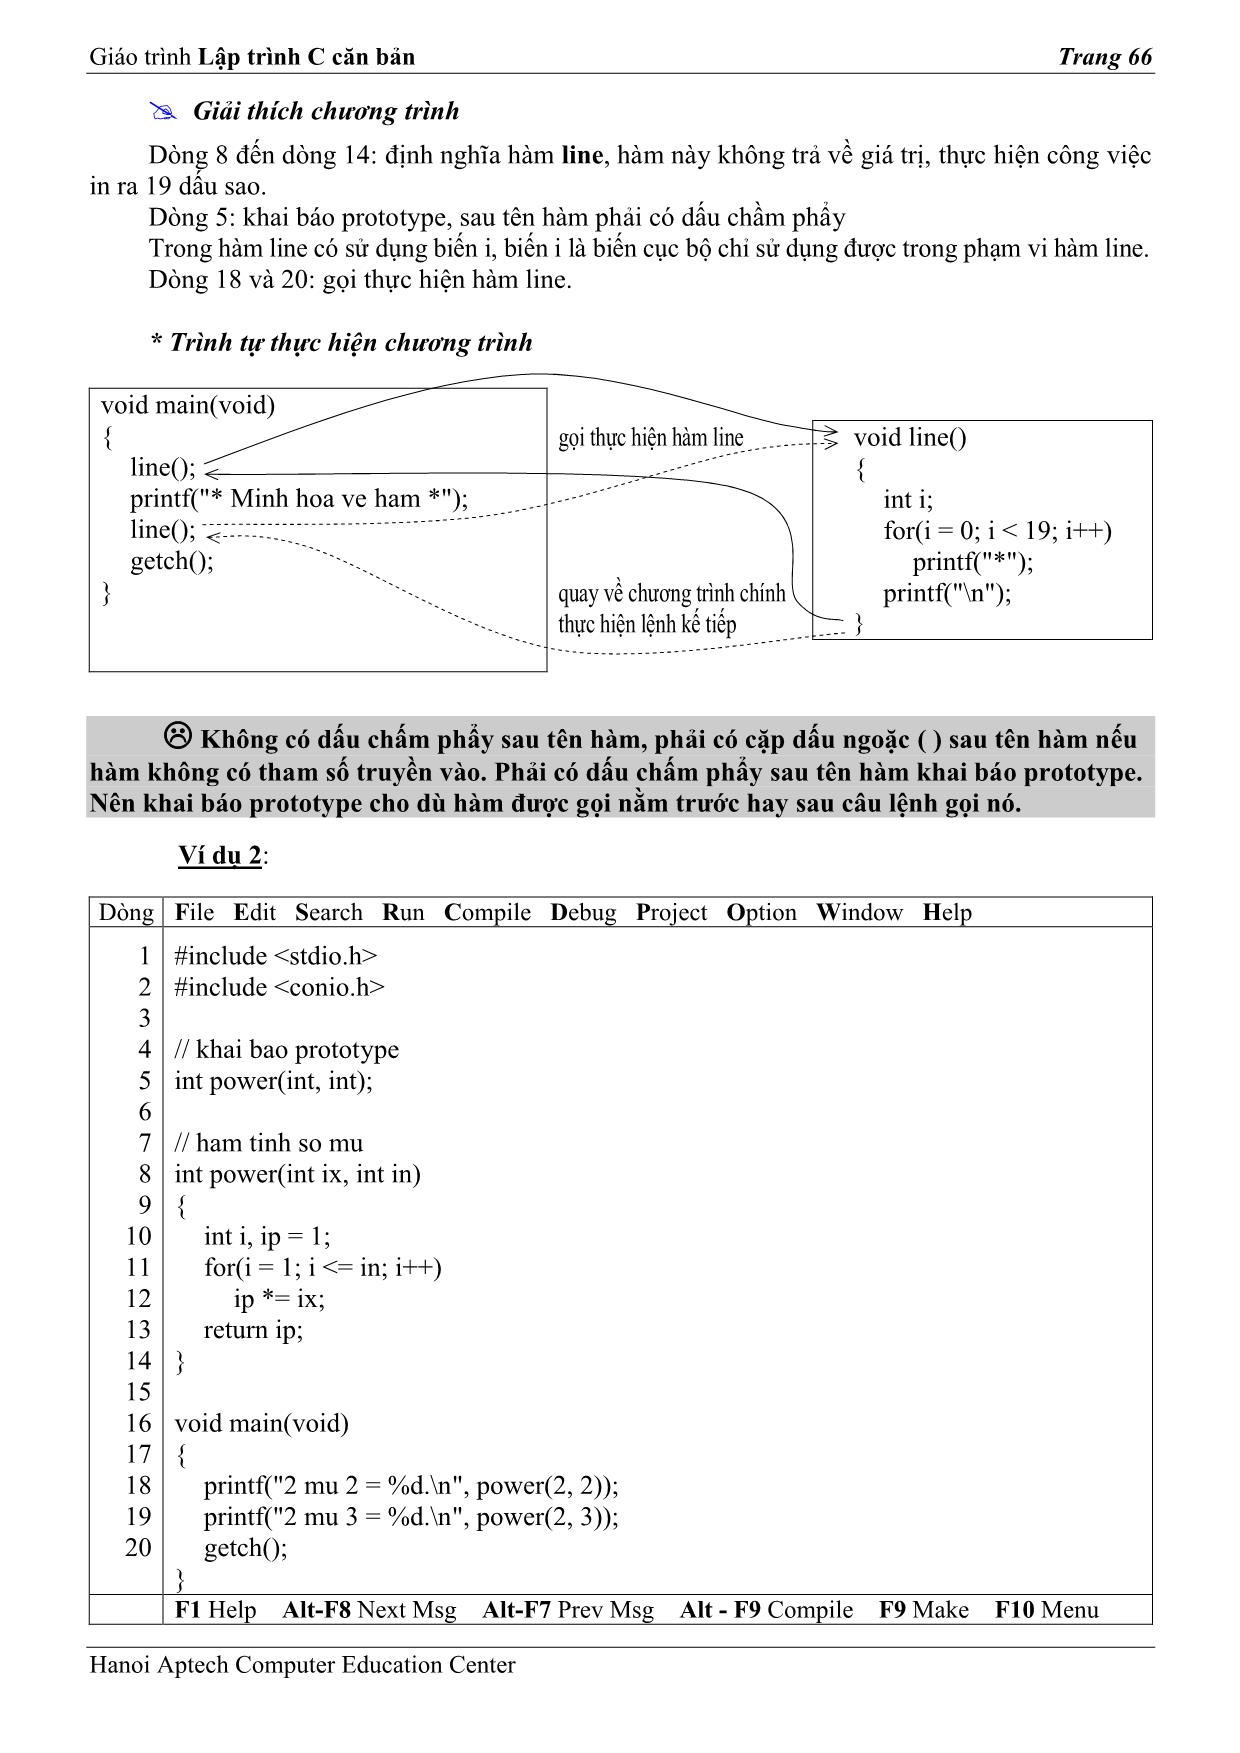 Giáo trình Lập trình C căn bản (Phần 2) trang 2